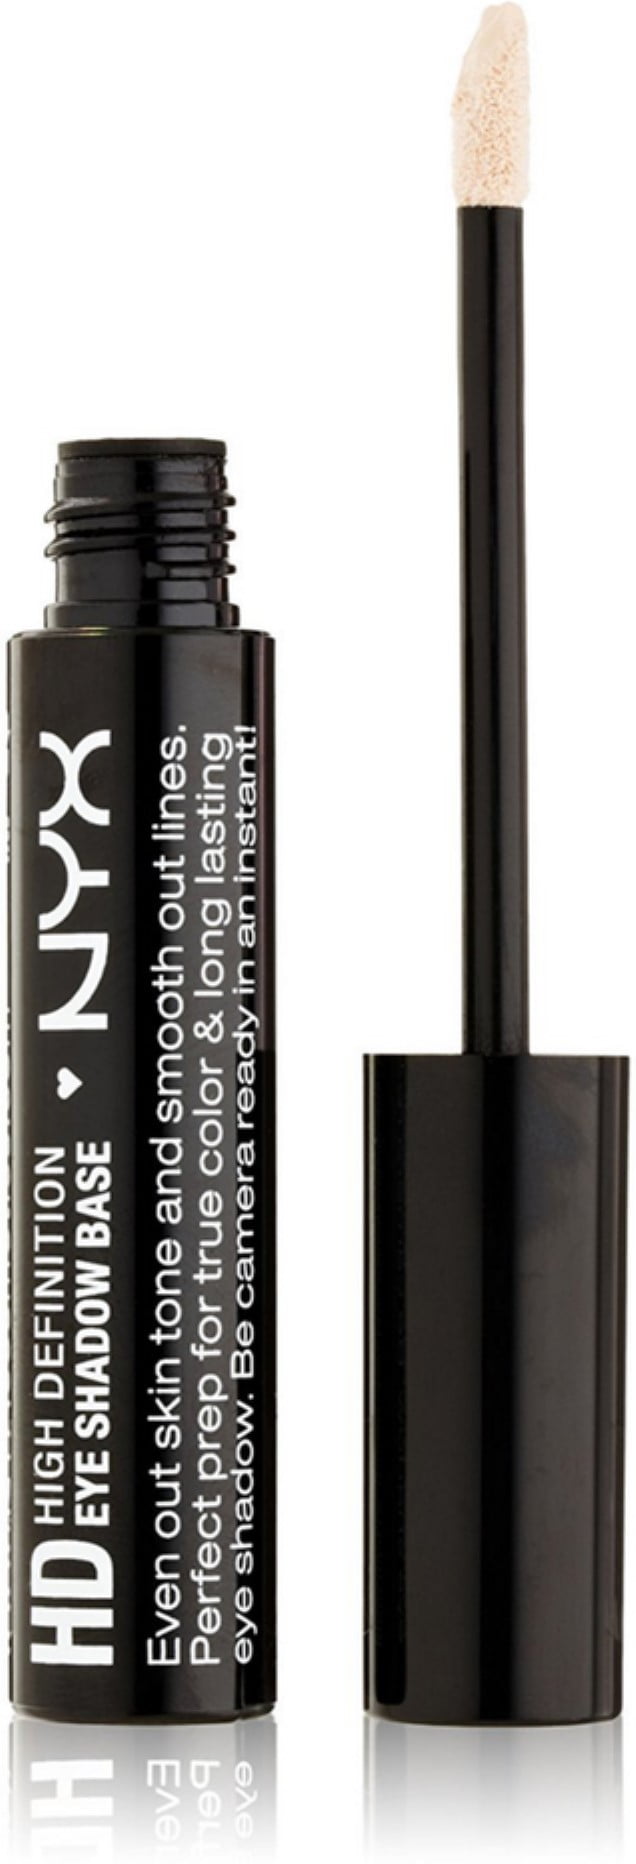 NYX Cosmetics Eye Shadow Base, High Definition 0.28 oz